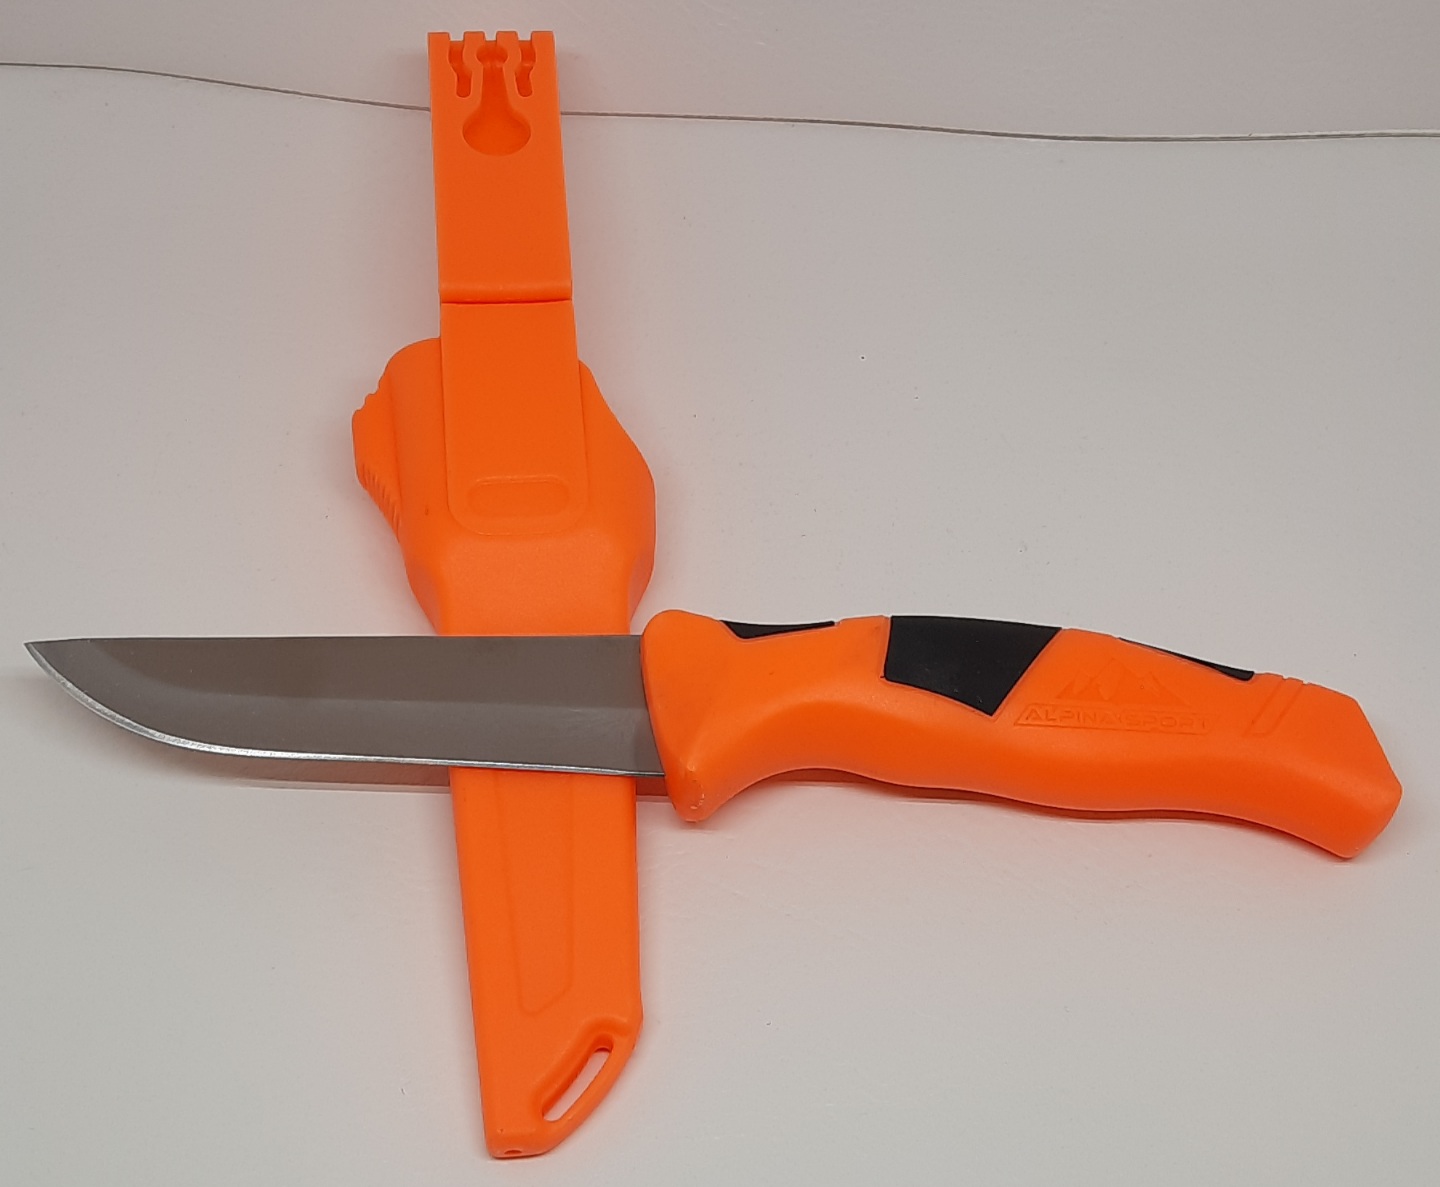 Messer festst.orange Alpina 